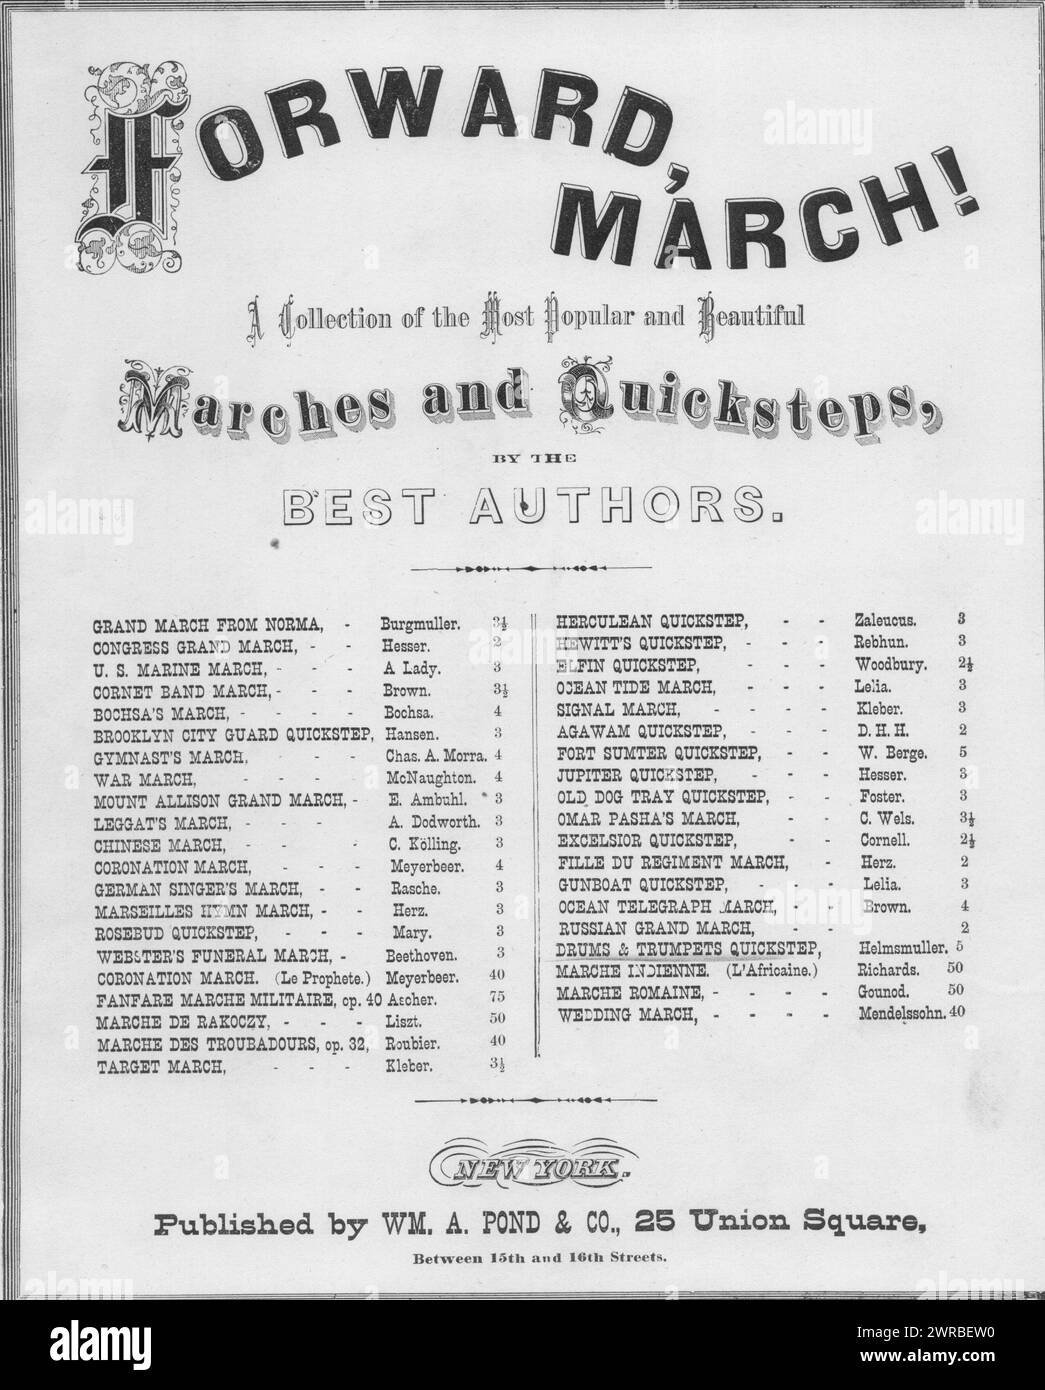 Drums & Trumpets, ou un défilé à Broadway, Helmsmuller, F. B. (compositeur), Wm. A. Pond, New York, 1890., États-Unis, histoire, guerre civile, 1861-1865, chansons et musique Banque D'Images